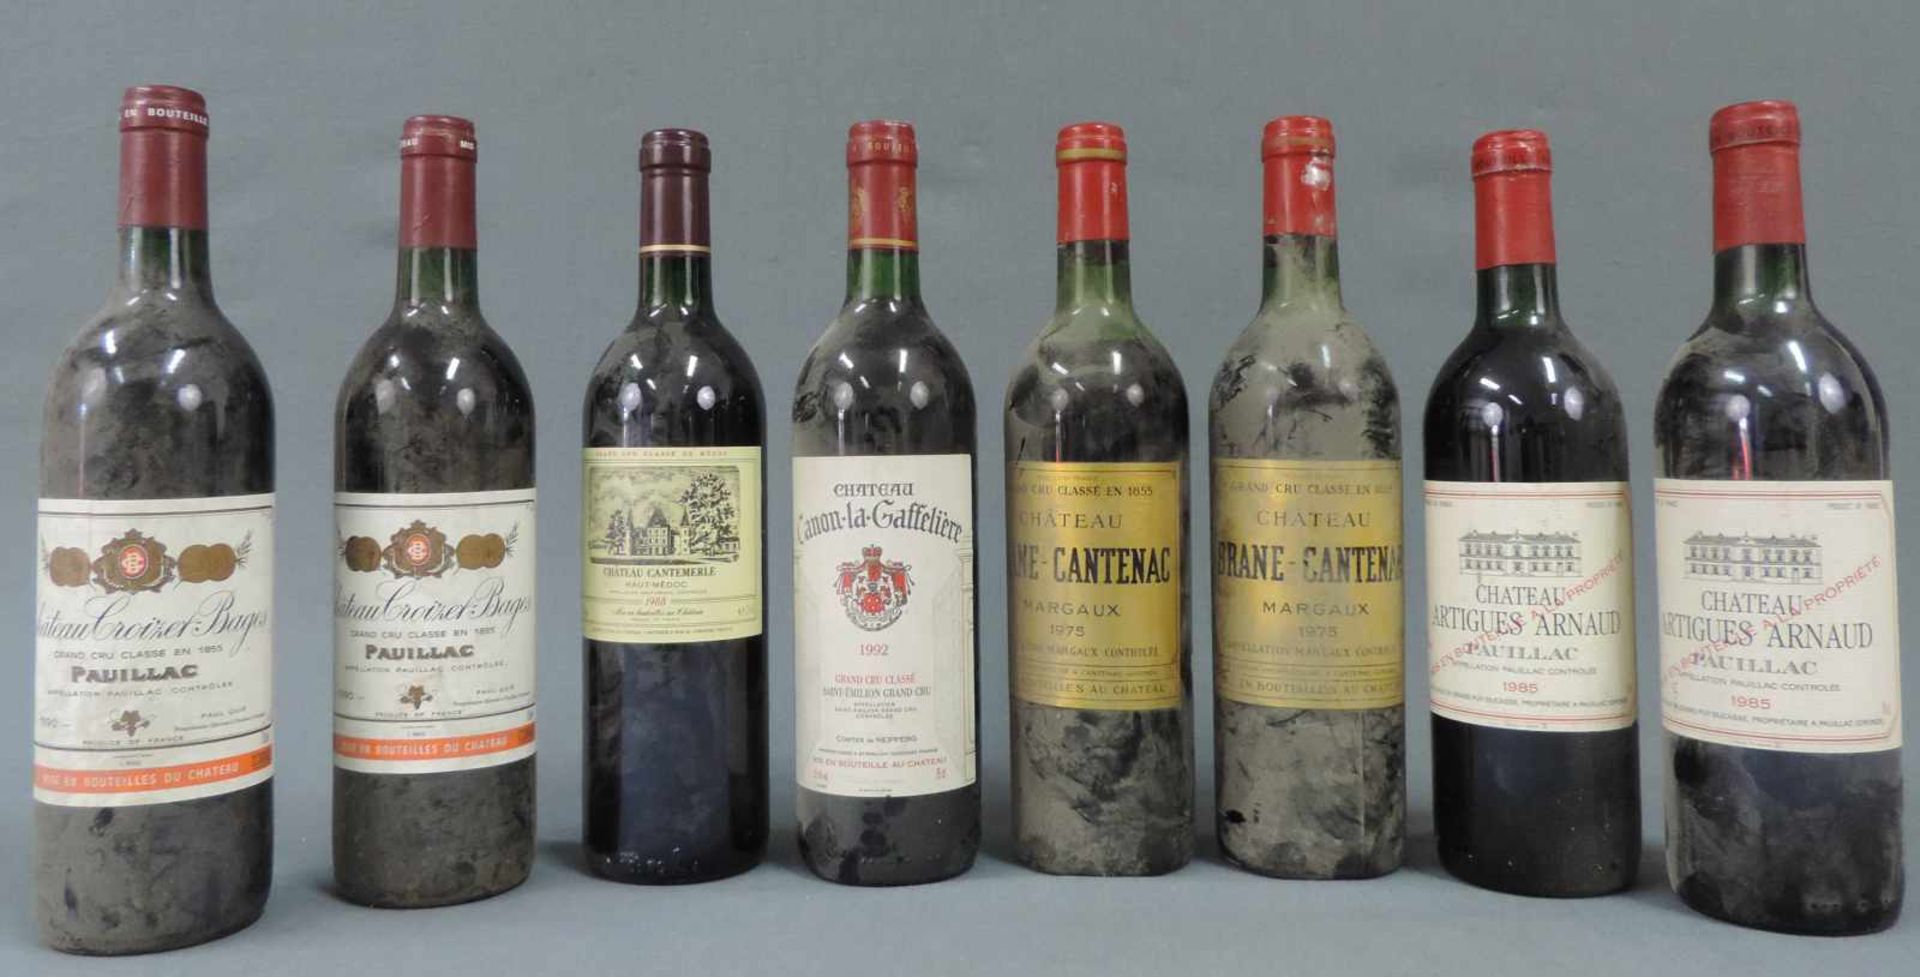 8 Flaschen Bordeaux. Davon 6 Grand Cru Classé. 1990 Chateau Croizet - Bages, Pauillac, AC, Gand